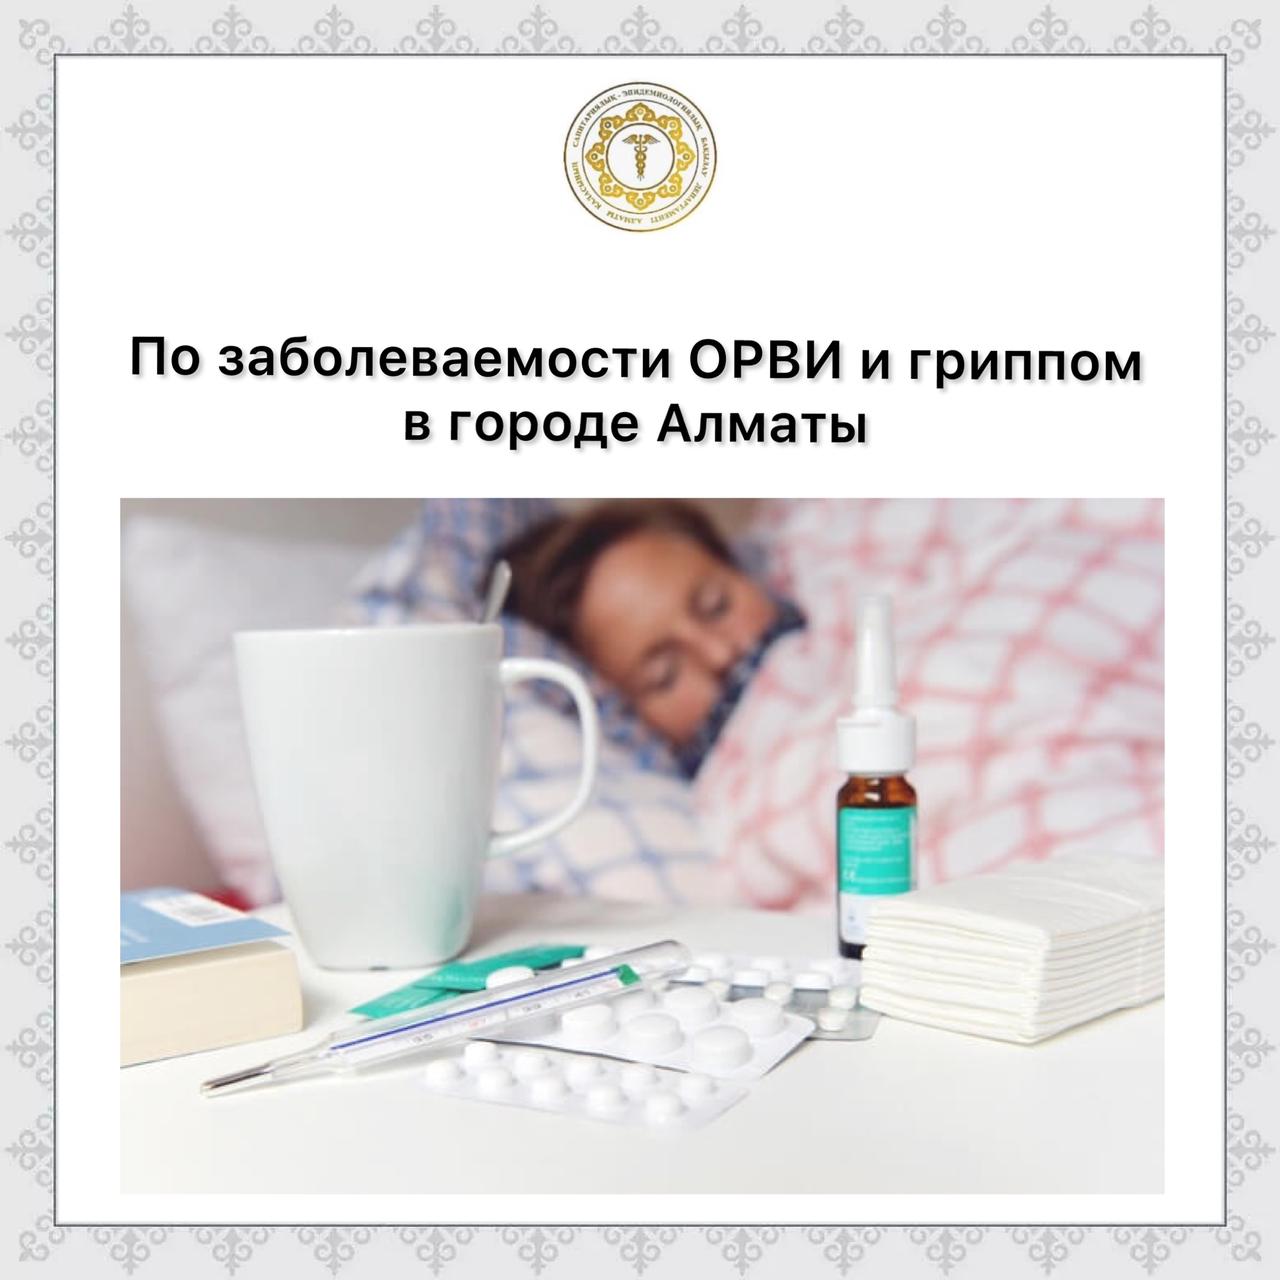 По заболеваемости ОРВИ и гриппом в городе Алматы